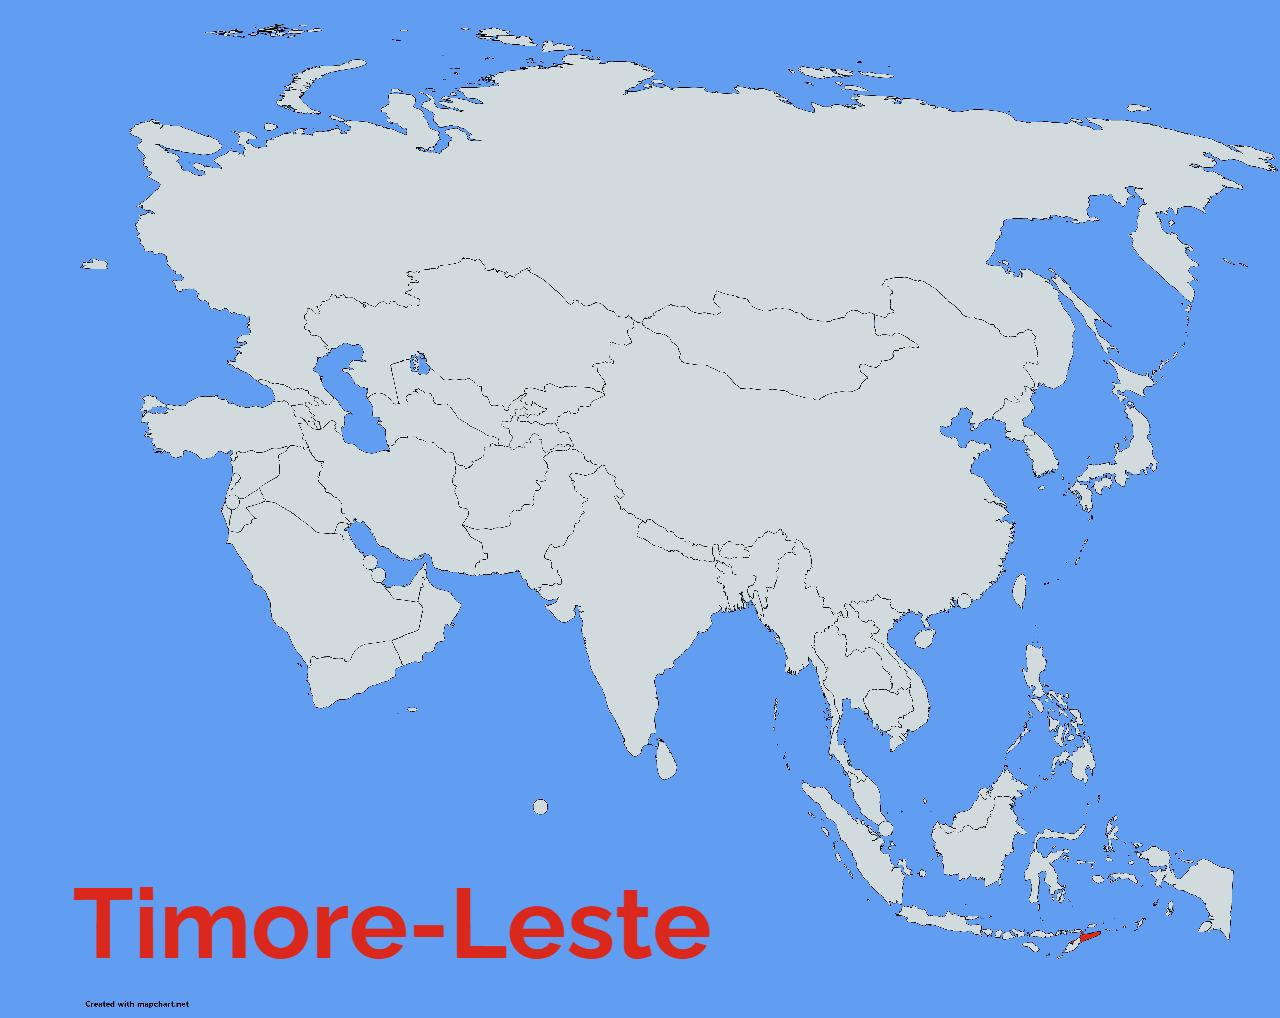 Timore-Leste